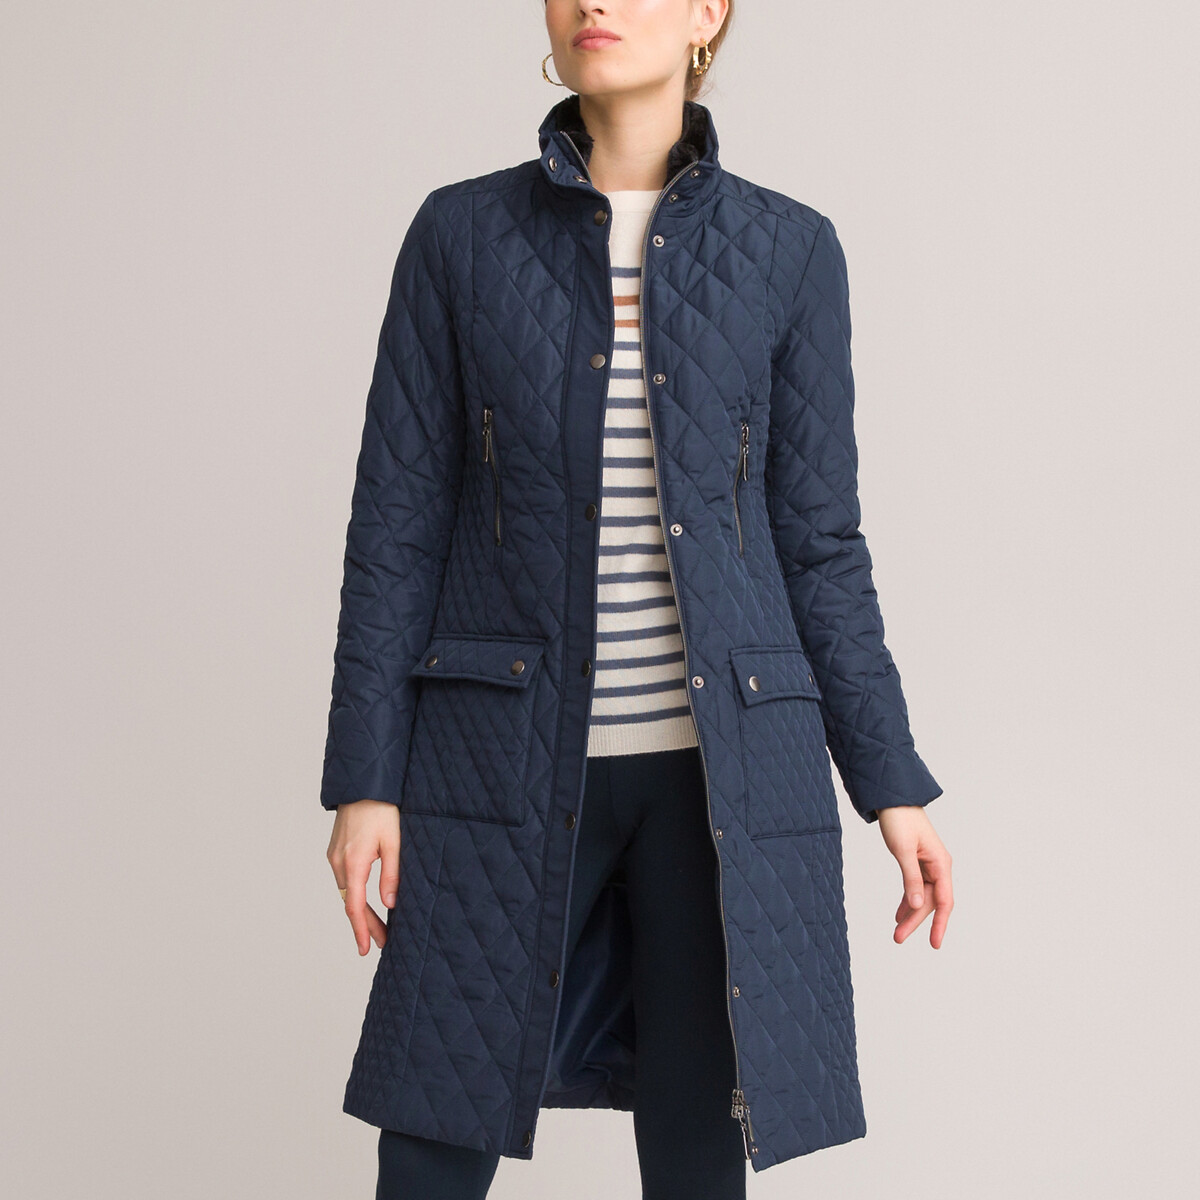 Куртка Стеганая средней длины застежка на молнию для зимы 38 (FR) - 44 (RUS) синий LaRedoute, размер 38 (FR) - 44 (RUS)